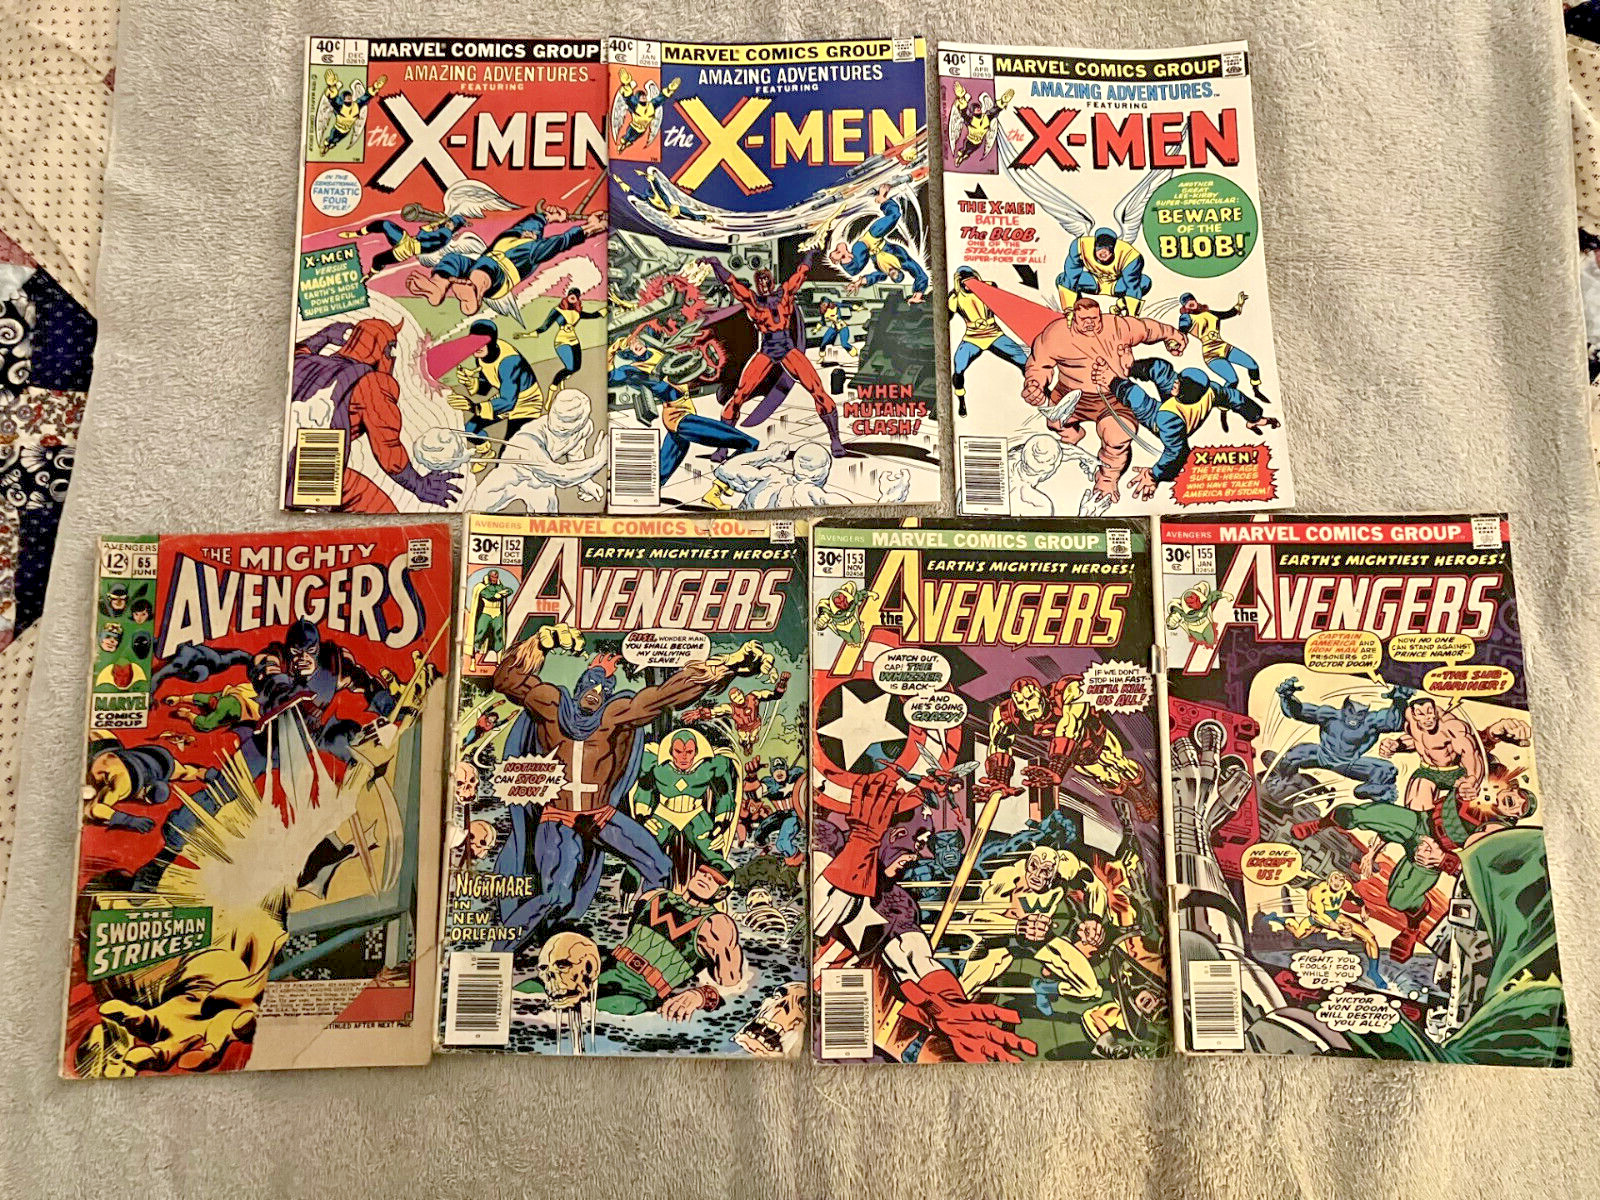 Marvel Comics Avengers 65, 152 153 155 Amazing Adventures 1 2 5 X-Men 7 books